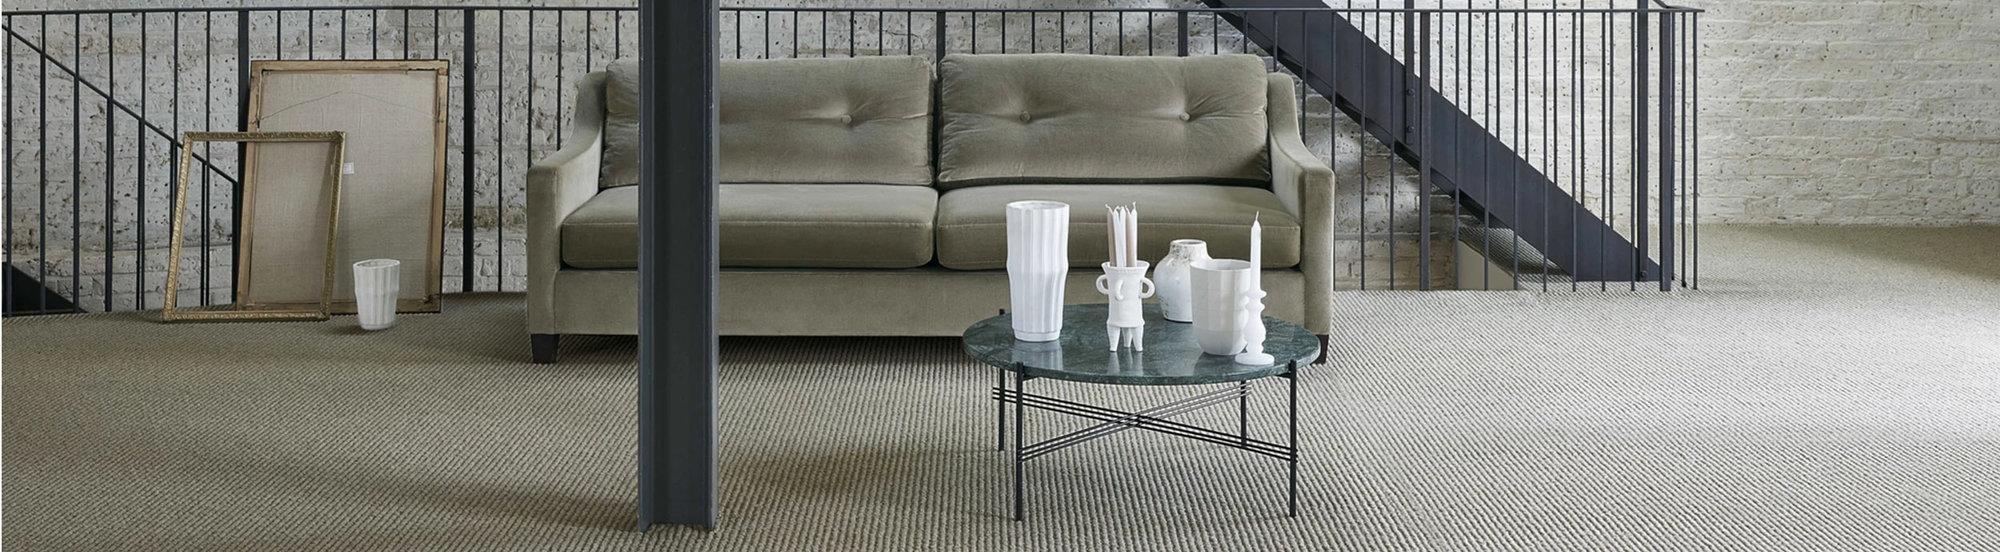 Wohnträume bietet eine facettenreiche Kollektionen an hochwertigen und innovativen Teppichböden.